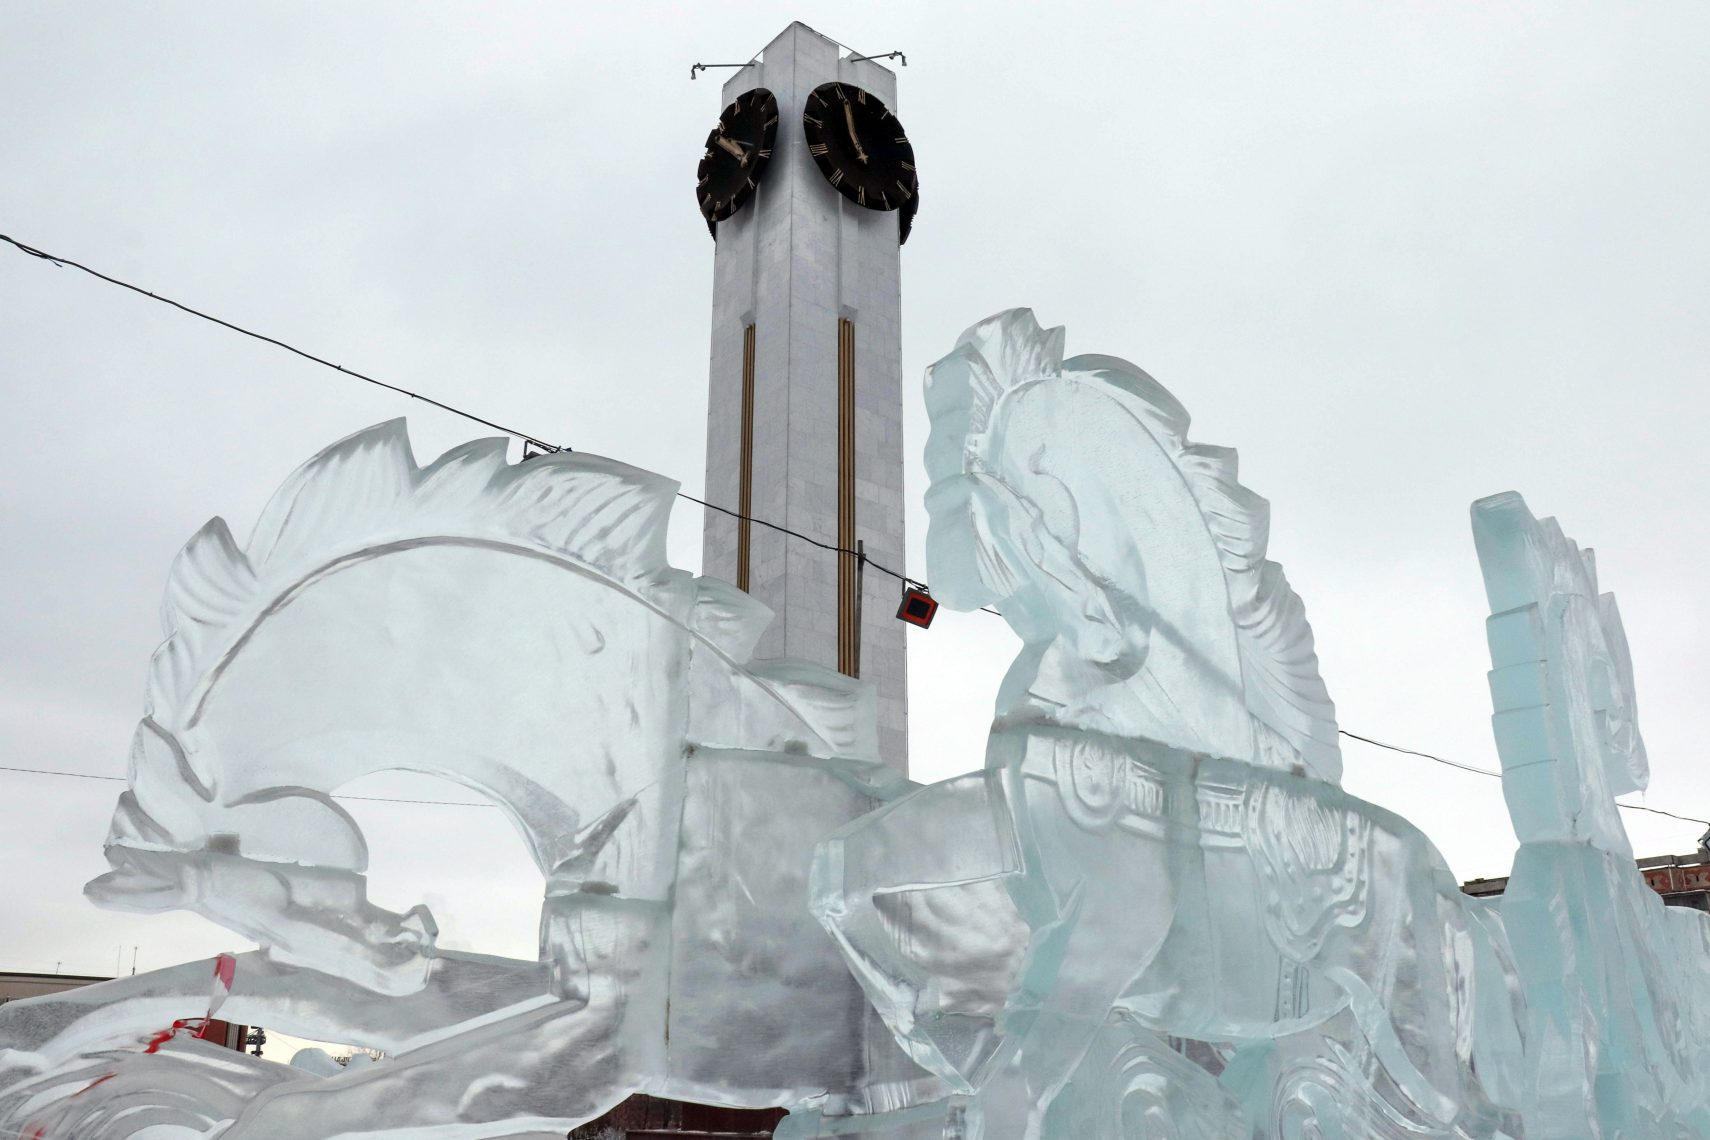 Погода в плюс - городки в минус. В Магнитогорске могут закрыть вход на ледовые развлечения